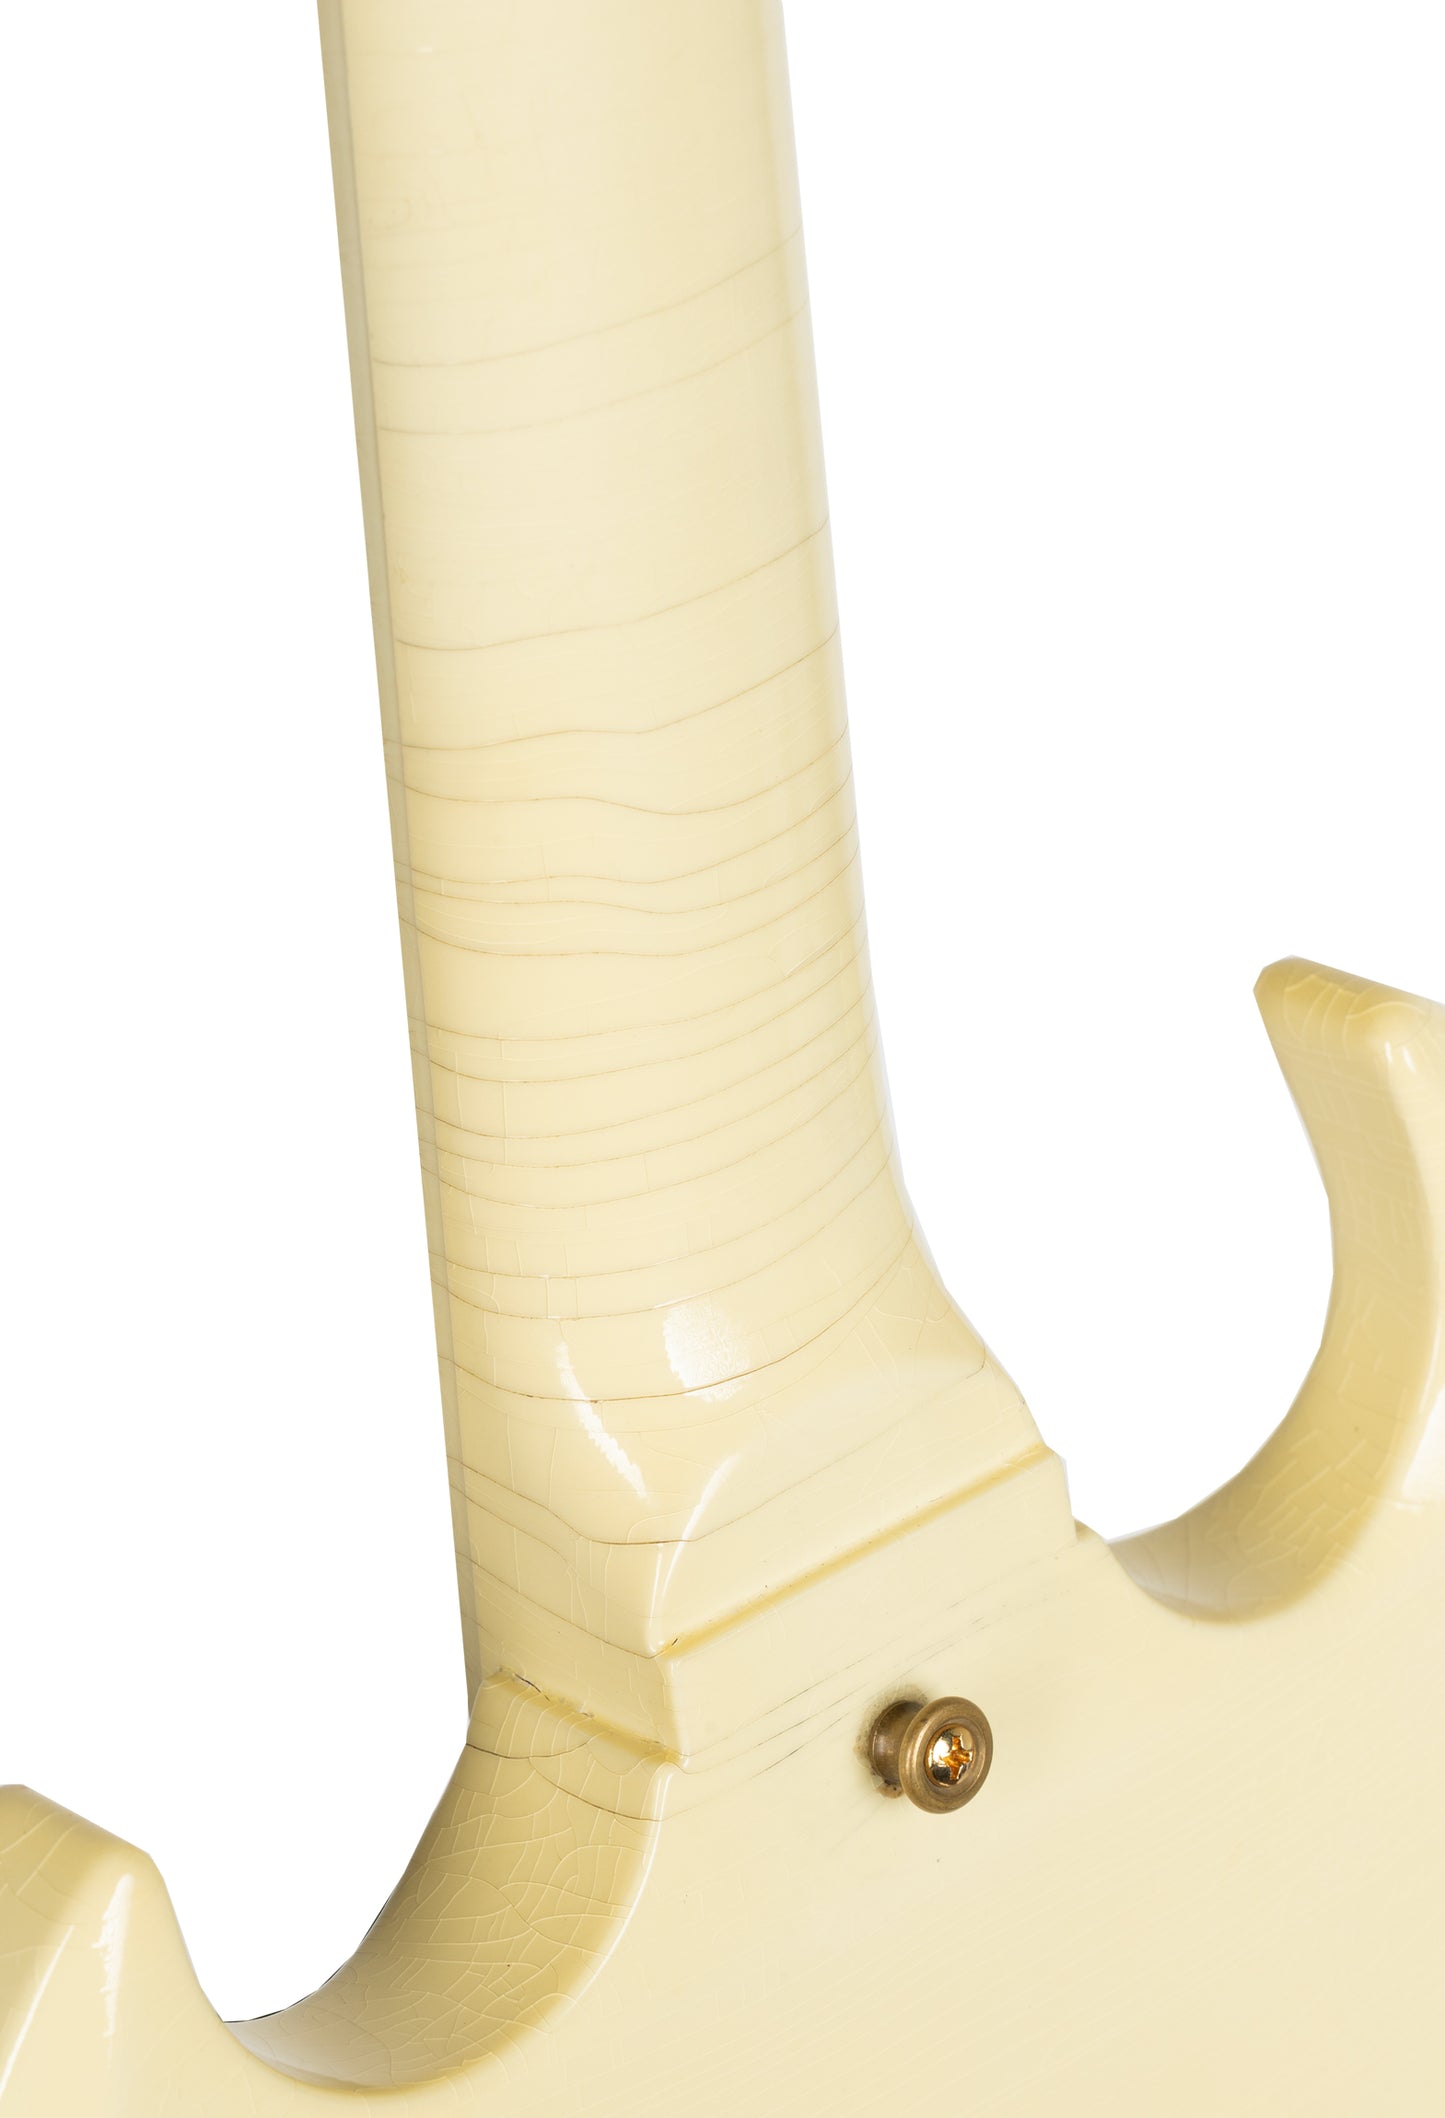 Gibson Jimi Hendrix ‘67 SG Custom Electric Guitar - White Aged